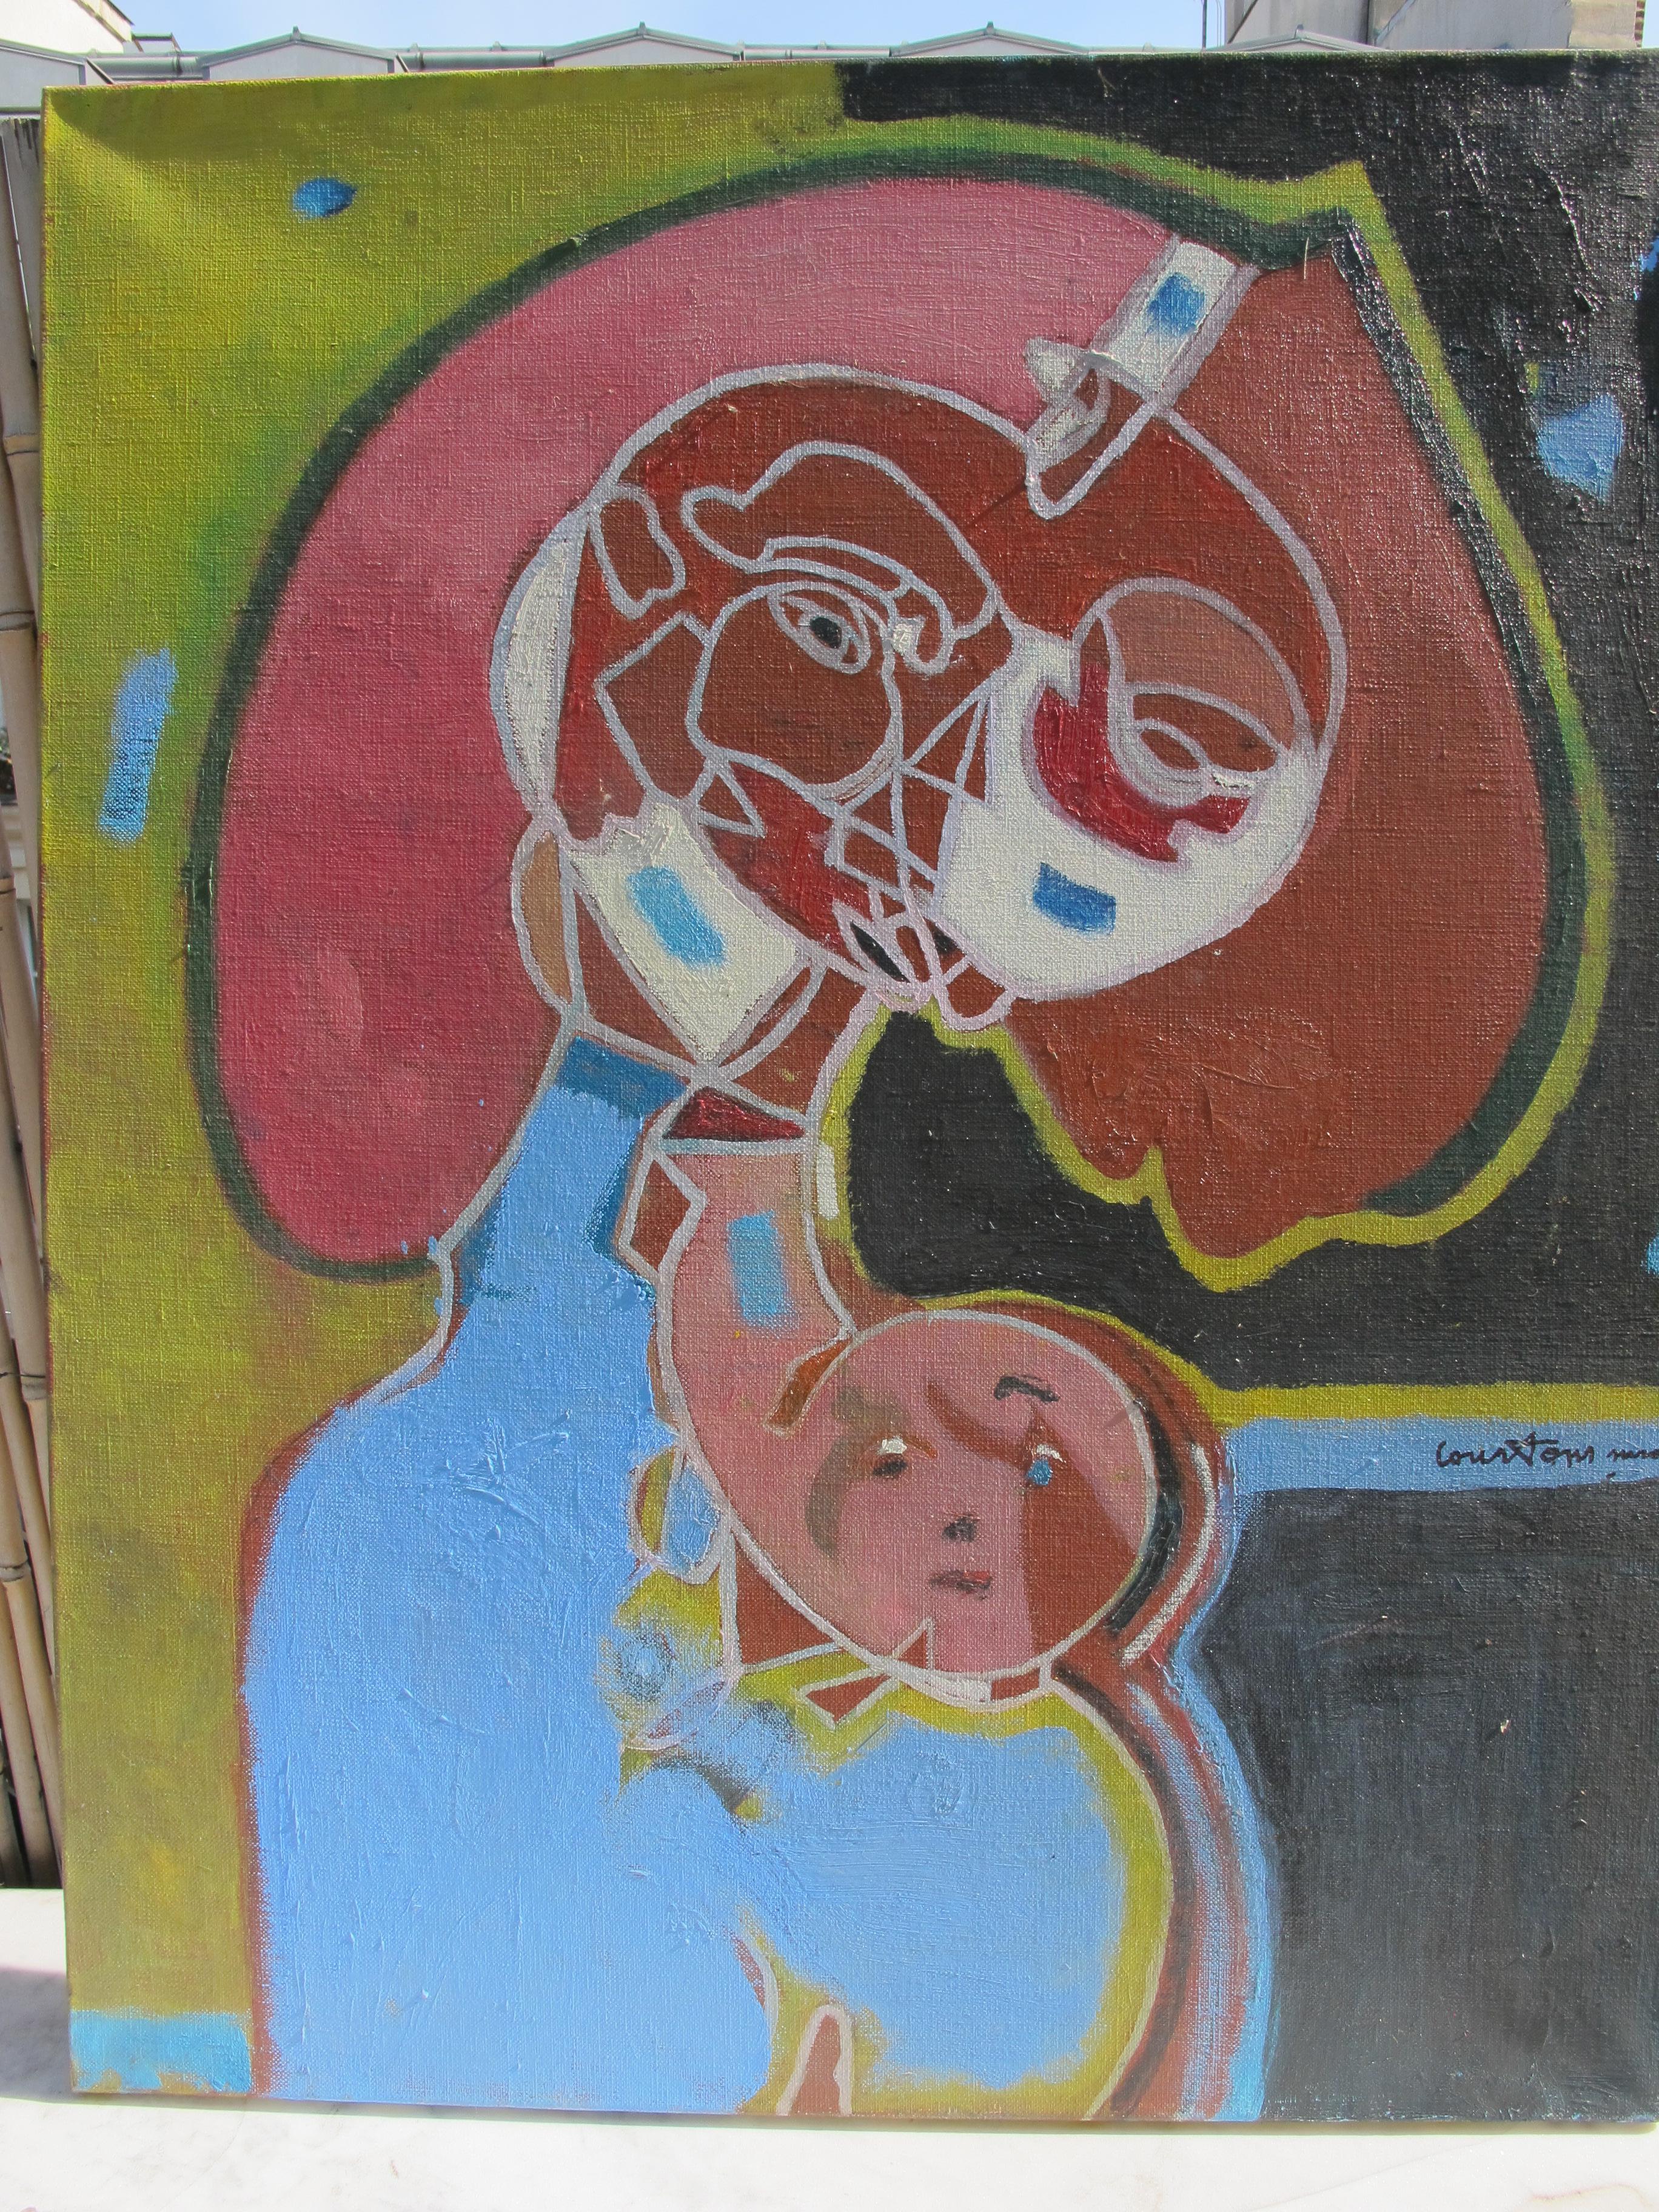 Oil on canvas, signed

Pierre Courtens (1921-2004)
Ce bruxellois d’une famille d’artistes se forme à l’Académie des Beaux-Arts de St Josse-Ten-Noode en 1942 auprès du peintre Jacques Naes.
Ses nombreux voyages en France et en Hollande, l’amènent